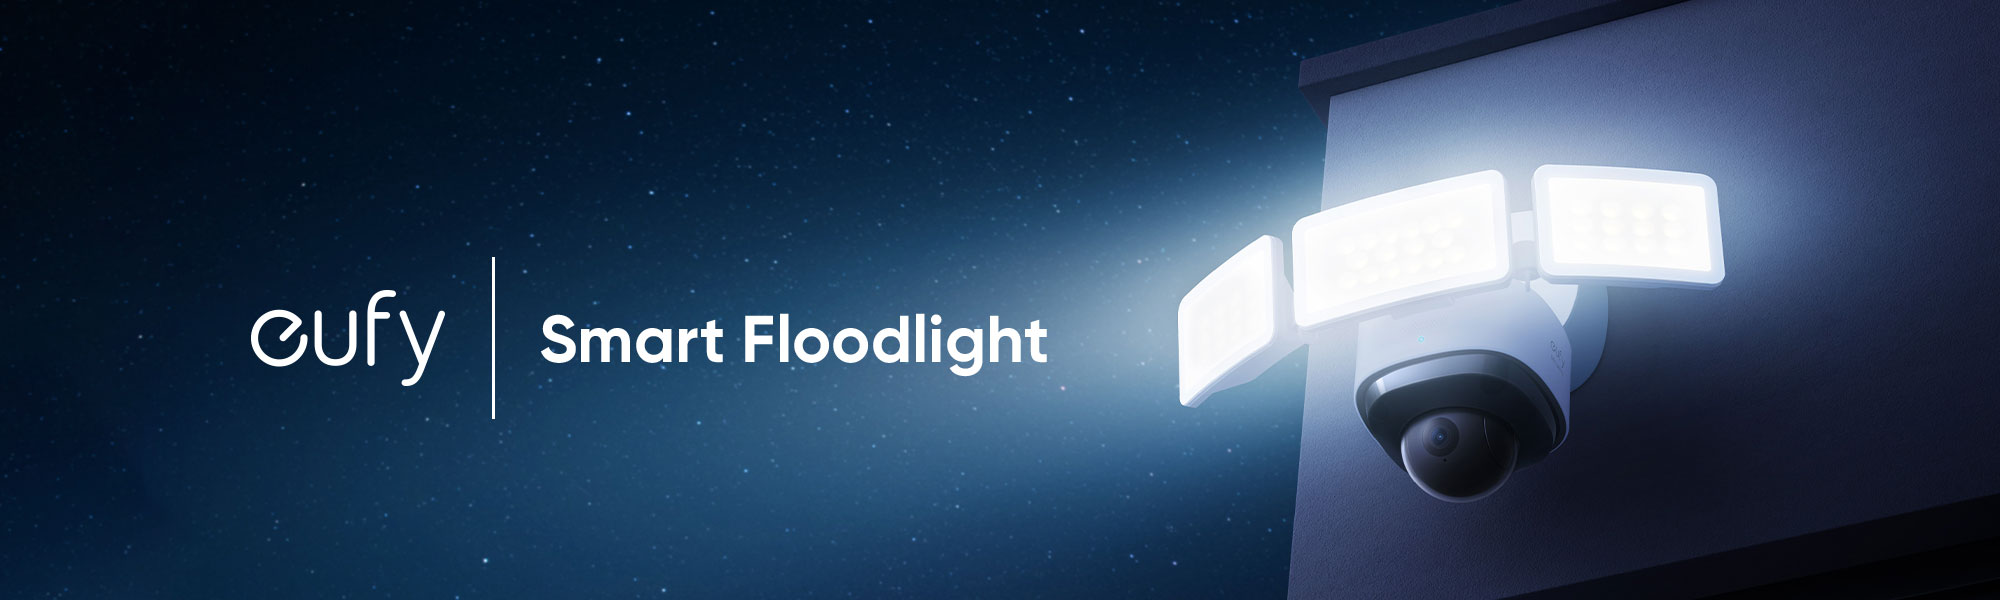 Smart Floodlight